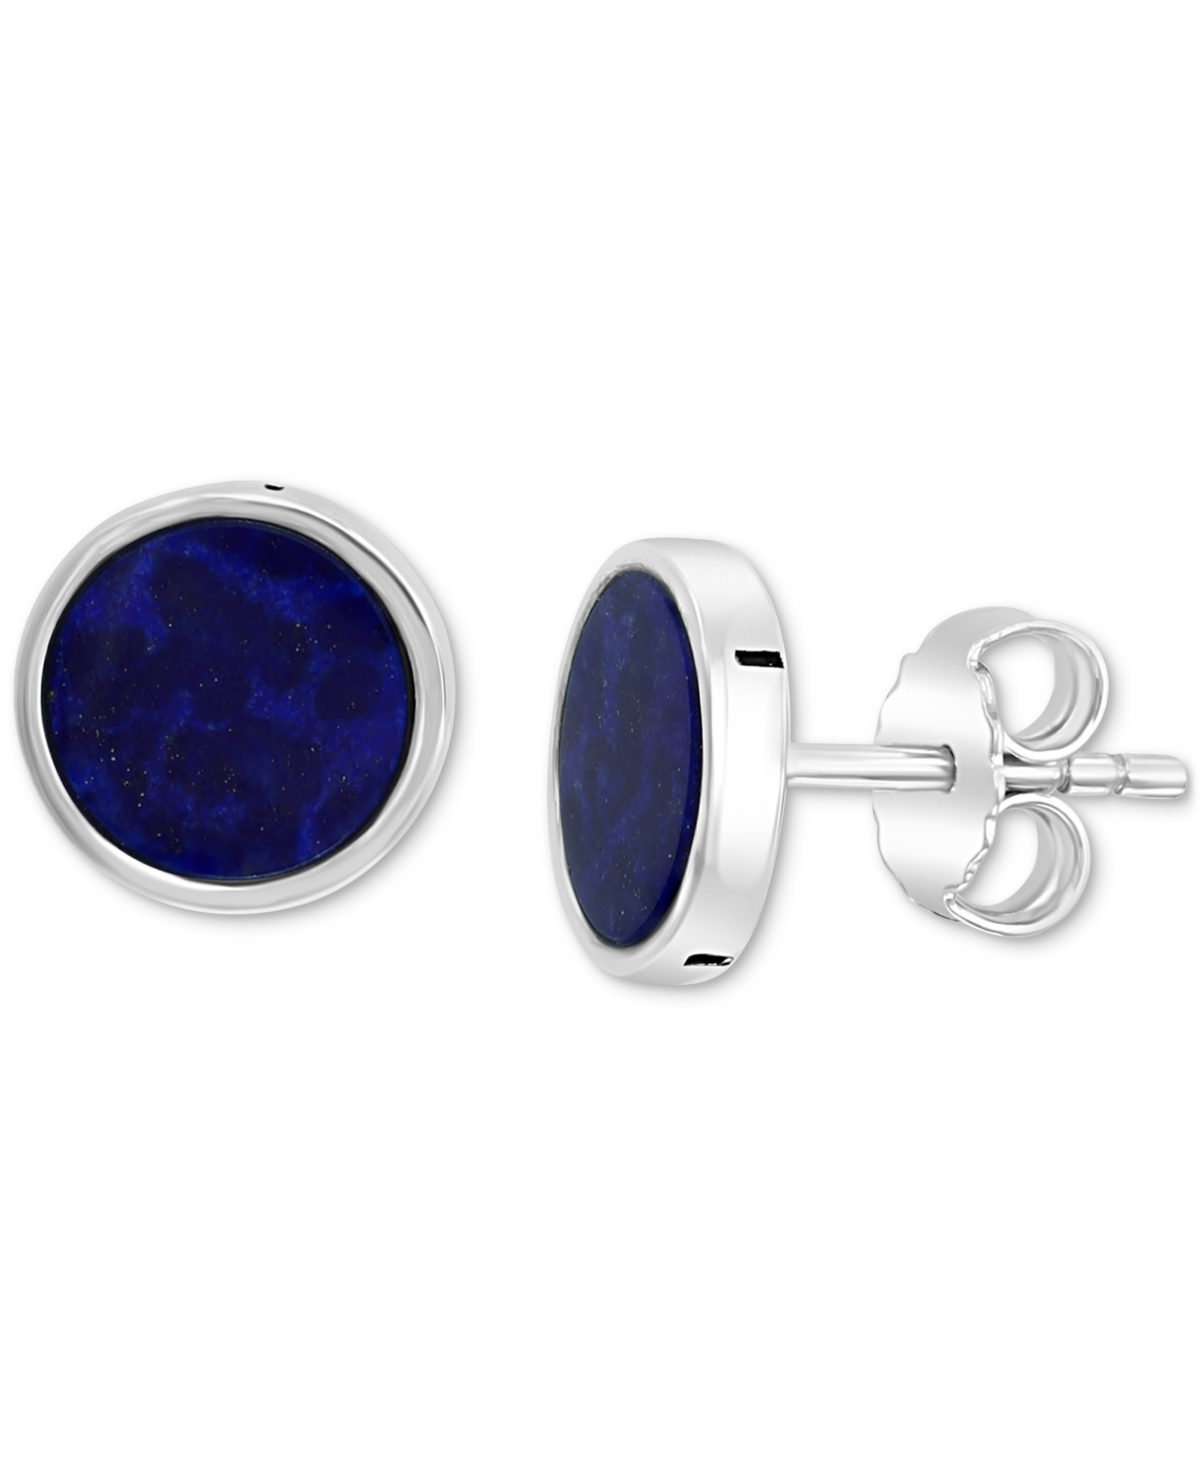 Effy Men's Lapis Lazuli Stud Earrings in Sterling Silver (Also in Malachite) - Lapis Lazuli